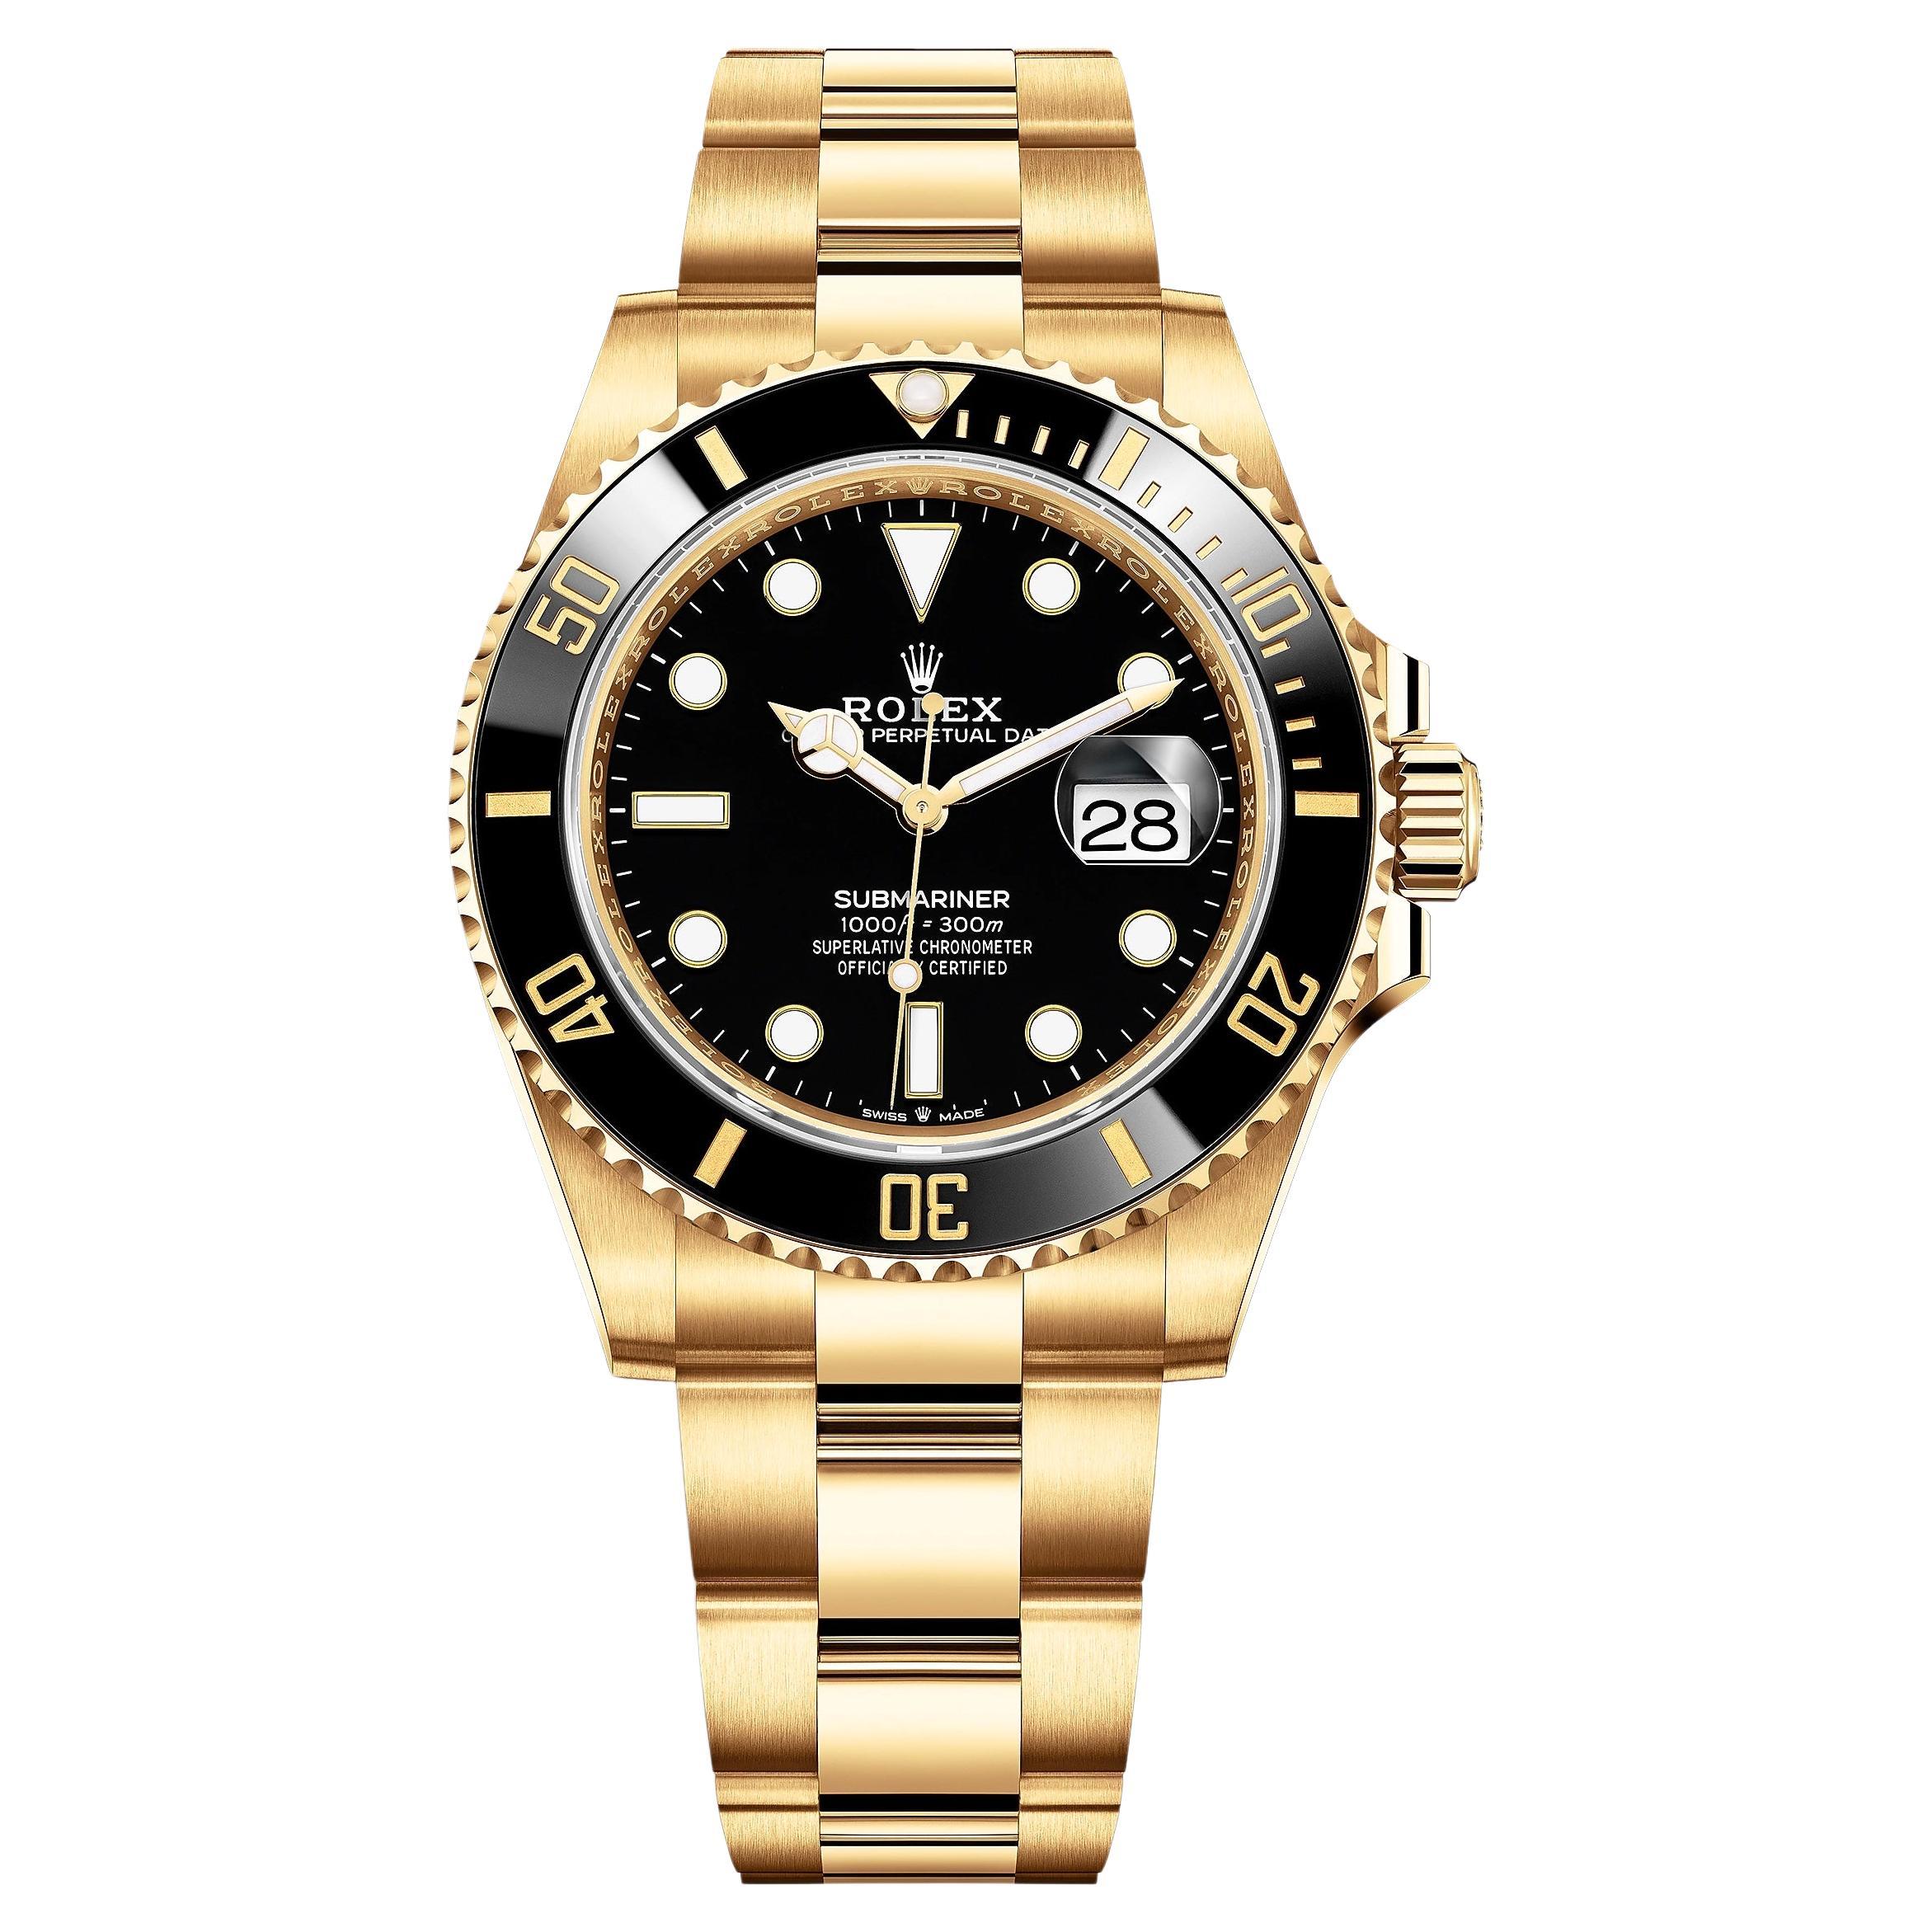 Rolex Submariner Date, 41 mm, YG, Black Dial, Ref# 126618LN, Unworn Watch, 2021 For Sale